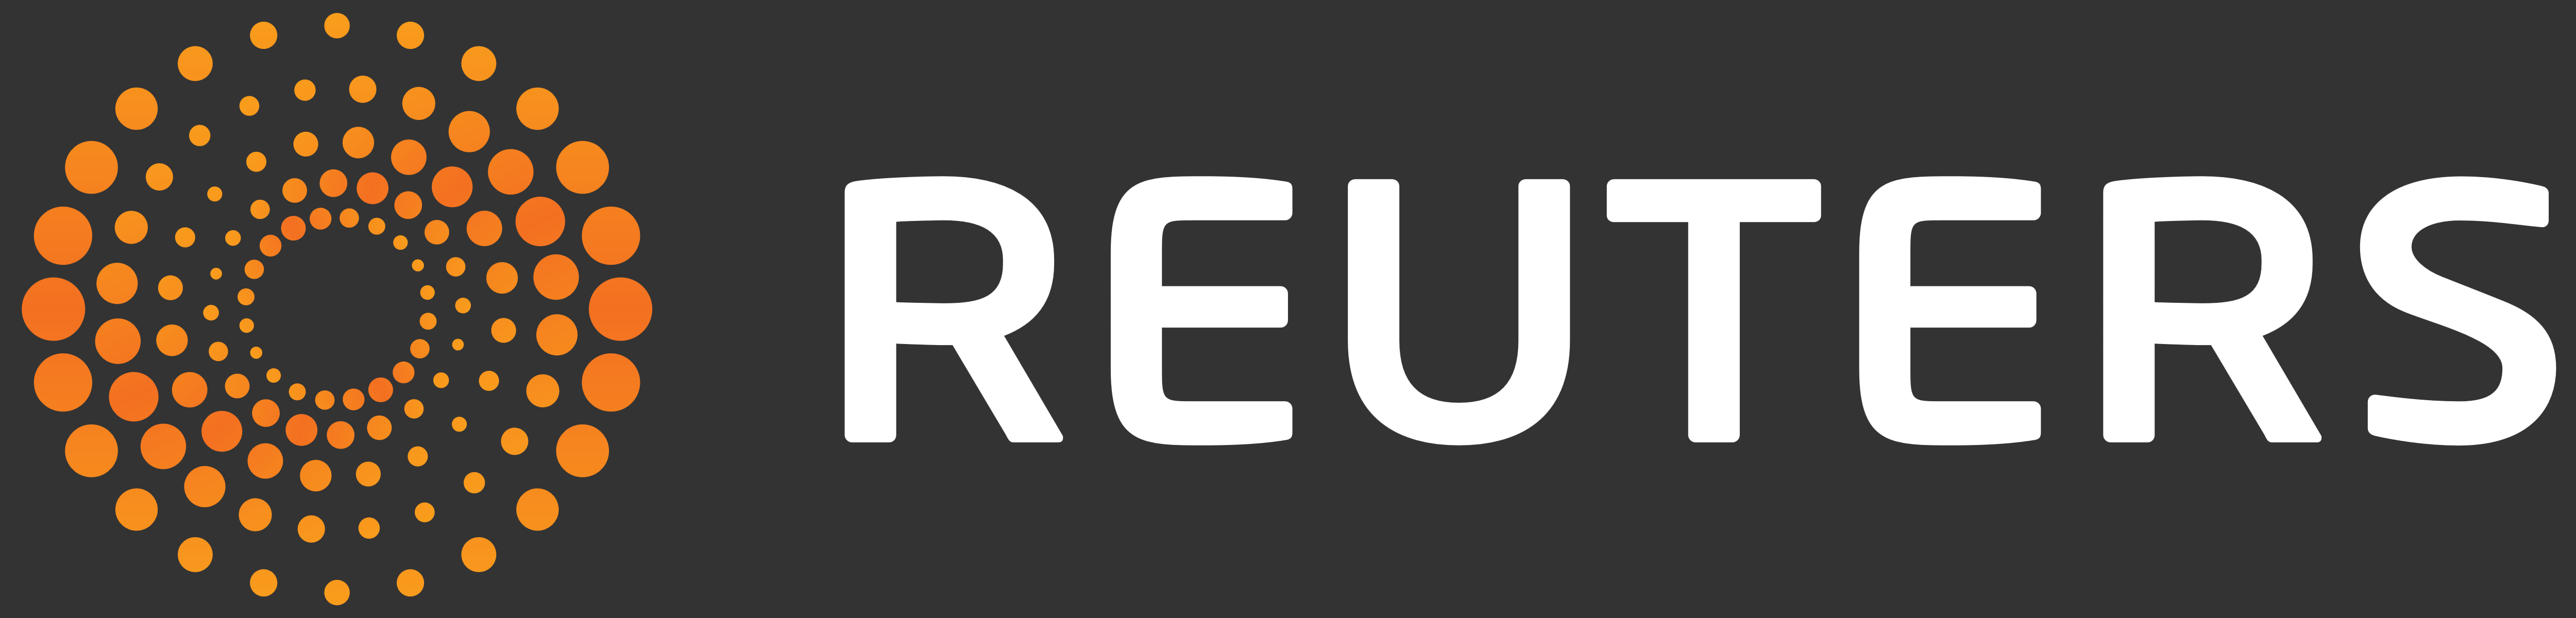 Reuters Logo PNG - 177547